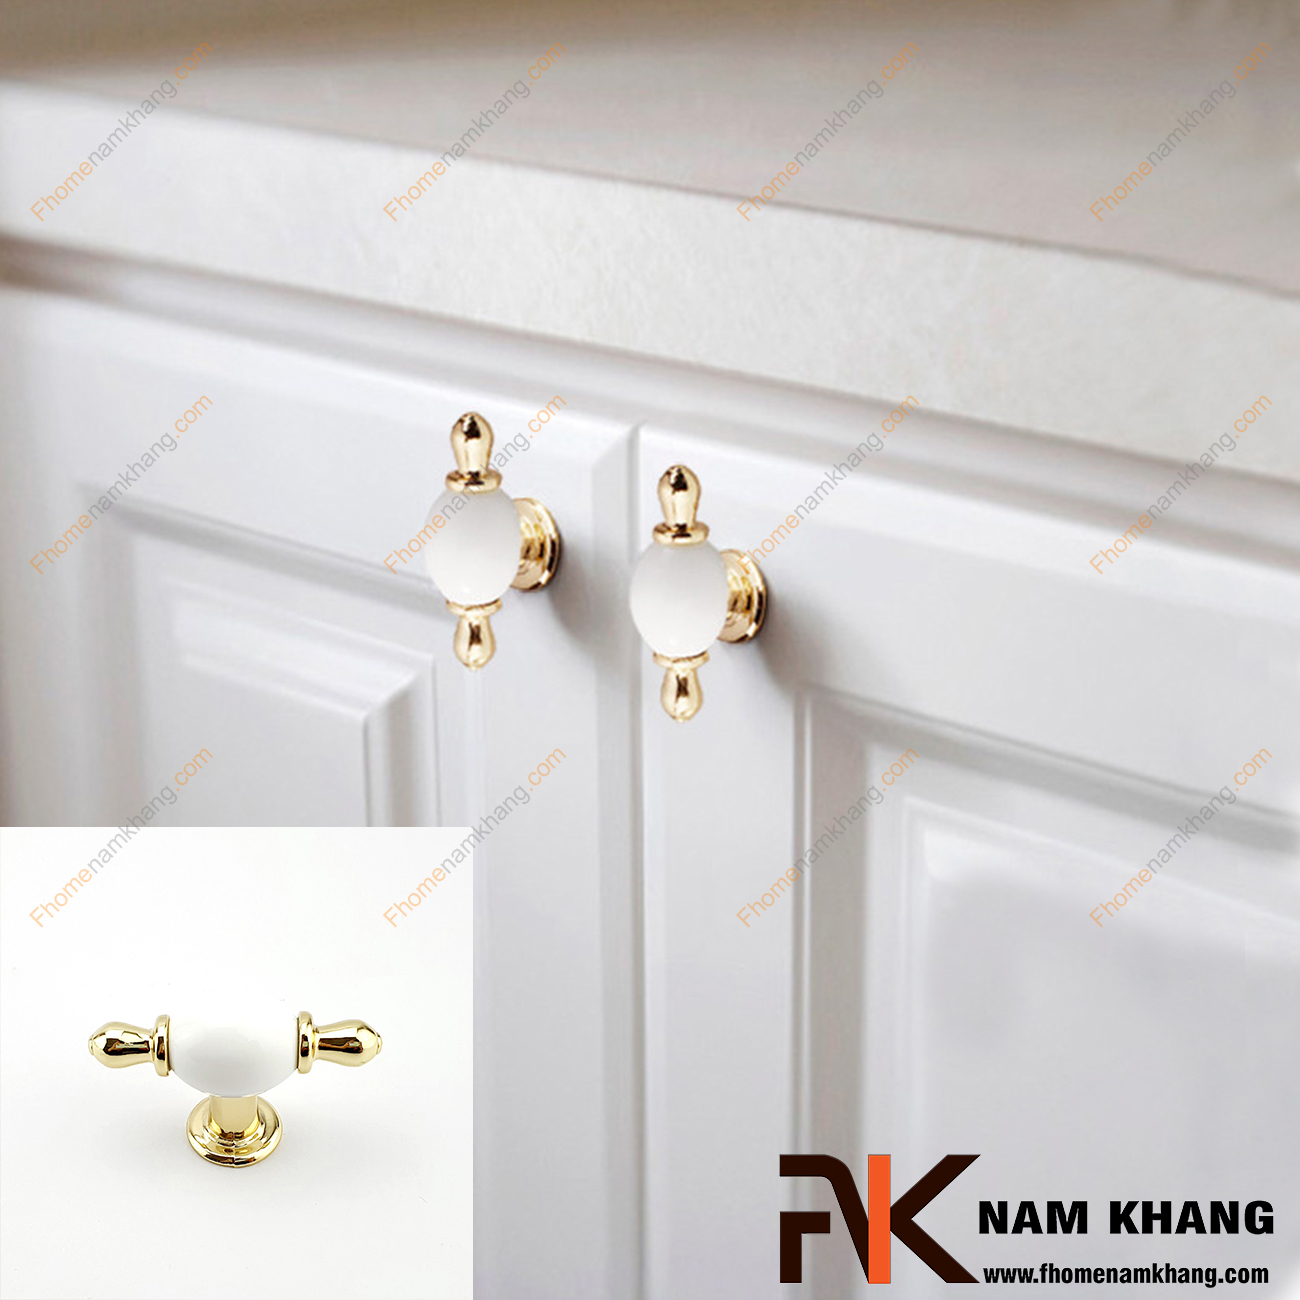 Núm cửa tủ dạng tròn sứ trắng viền vàng NK329-VT có thiết kế khá đơn giản từ hợp kim mạ vàng bọc quanh sứ trắng bóng cao cấp. Khá đơn giản nhưng lại toát lên vẻ ngoài tinh tế và rất sang trọng .